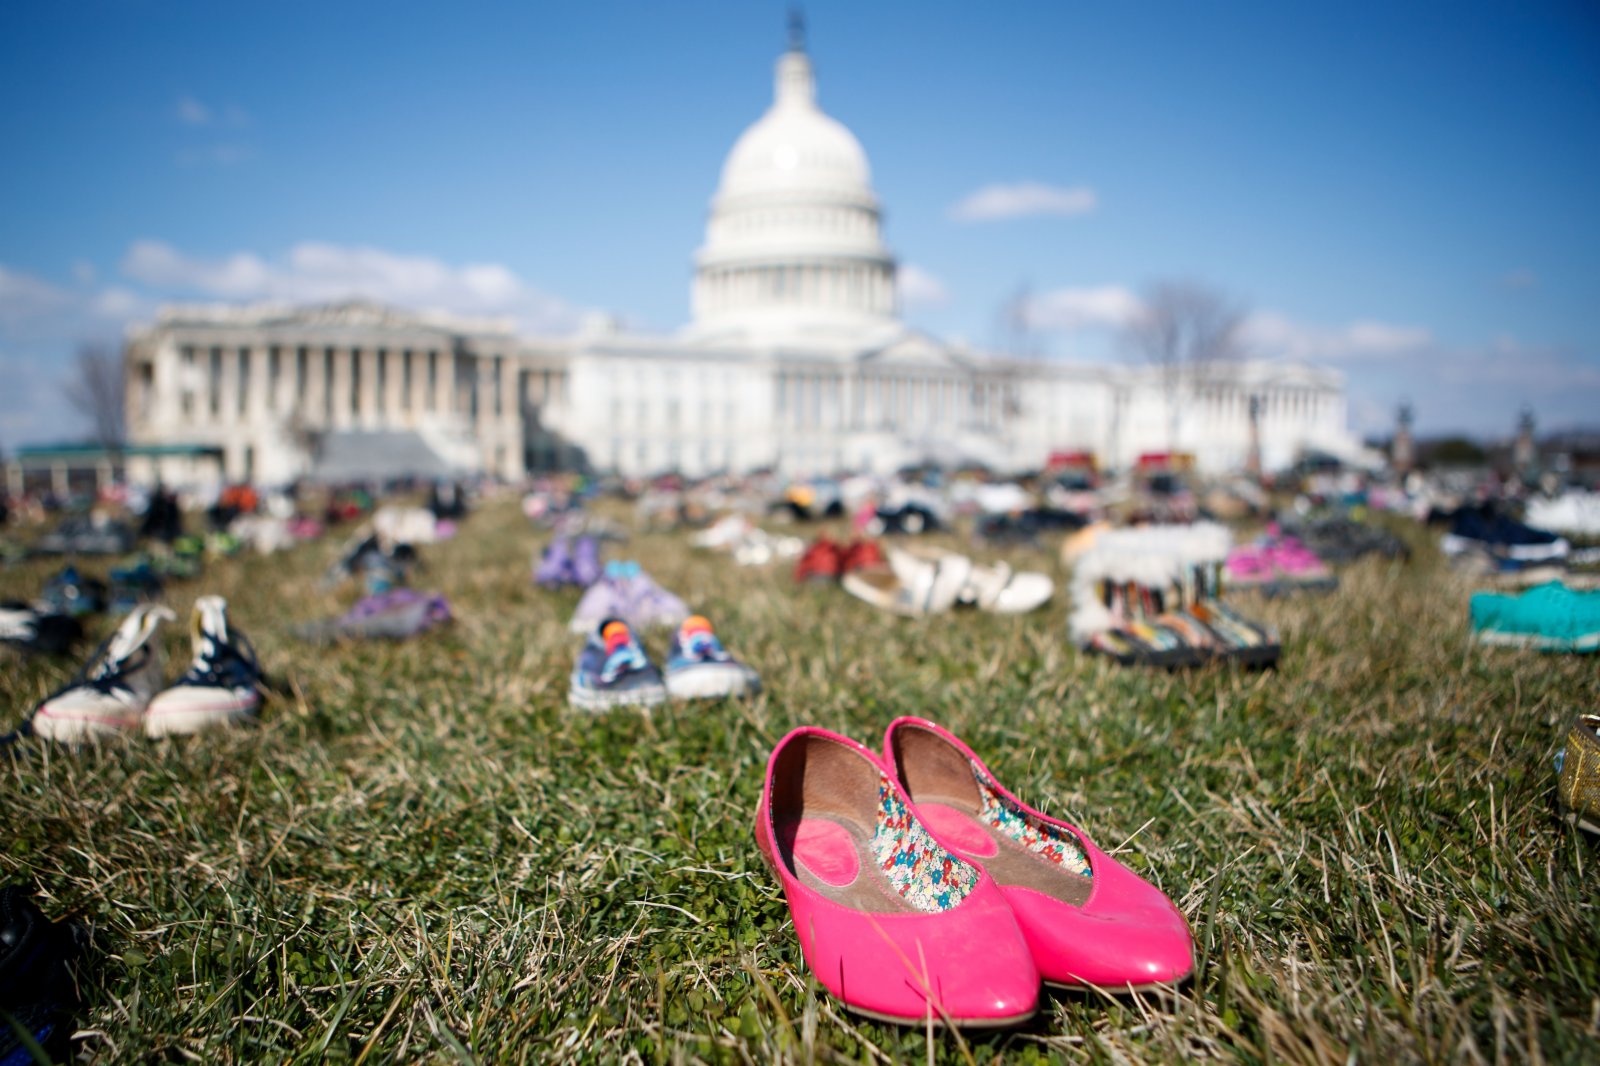 2018年3月13日，7000雙代表自2012年美國康涅狄格州桑迪胡克小學槍擊案以來槍擊事件中遇難兒童的鞋子擺放在華盛頓國會山前的草坪上。人們以這種無聲的方式，抗議國會面對槍擊頻發現狀的不作為，呼籲槍支改革以保障兒童安全。